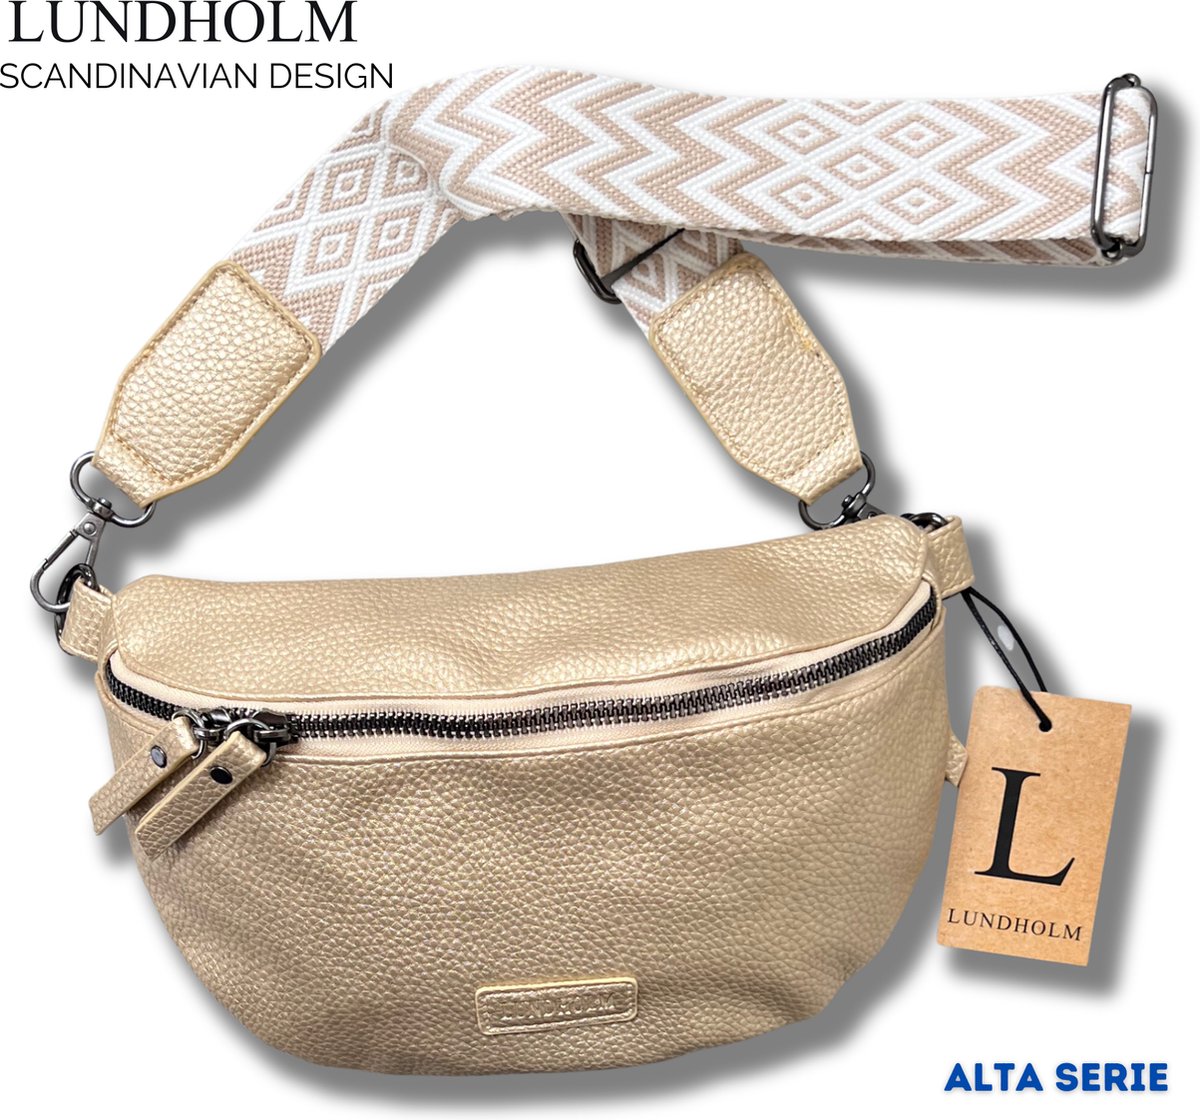 Lundholm heuptasje dames festival goud - bag strap tassenriem met schouderband voor tas - cadeau voor vriendin | Scandinavisch design - Alta serie - crossbody tas dames Goud